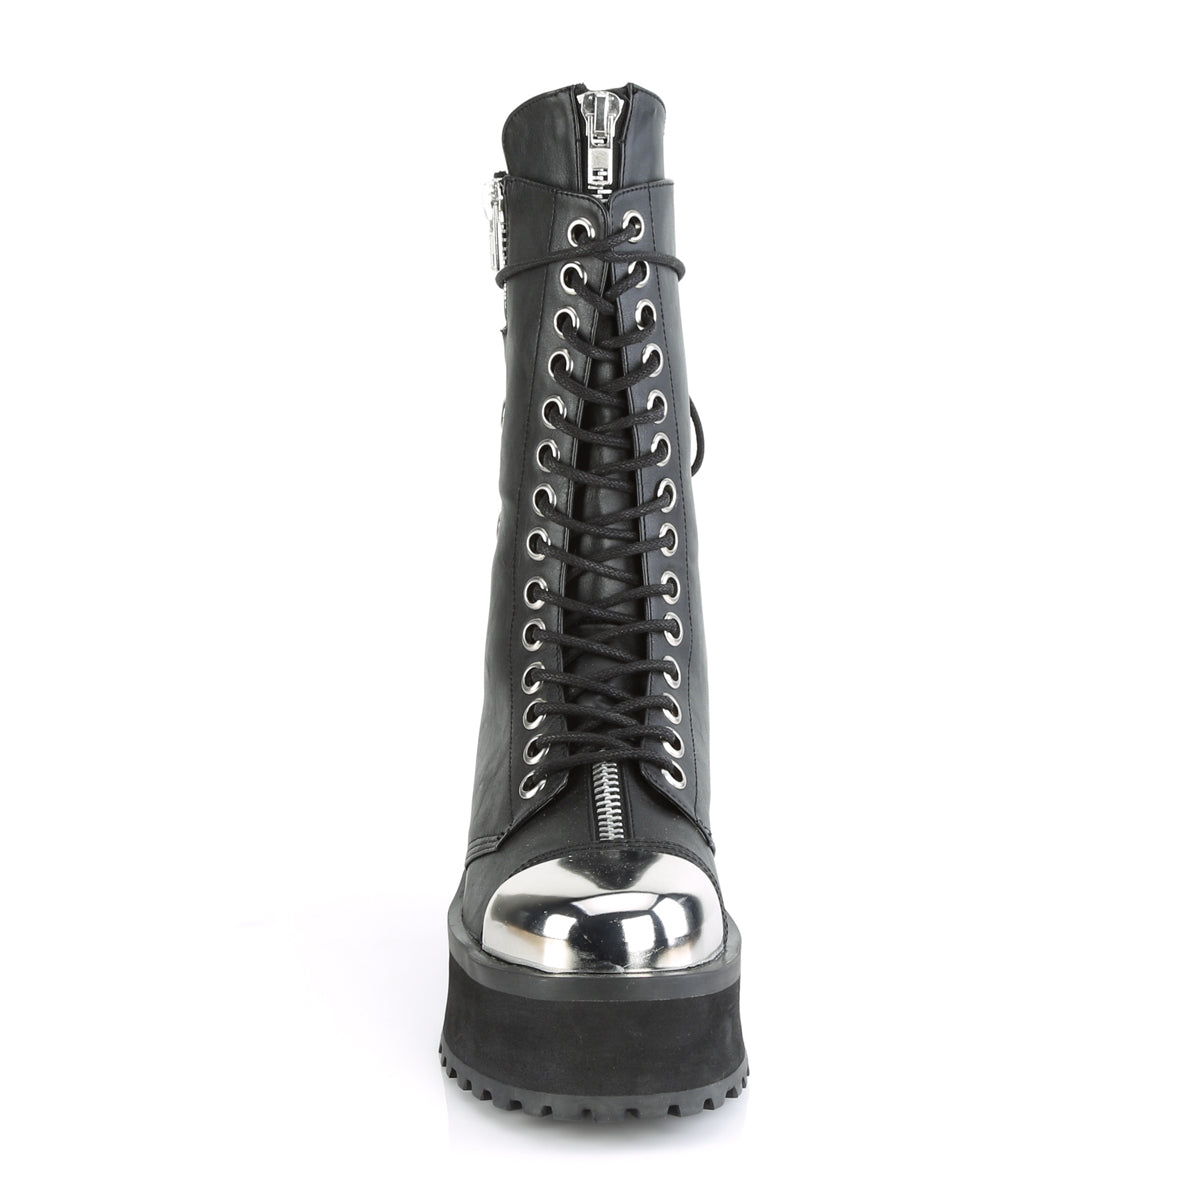 GRAVEDIGGER-14 Black Vegan Leather Mid-Calf Boot Demonia